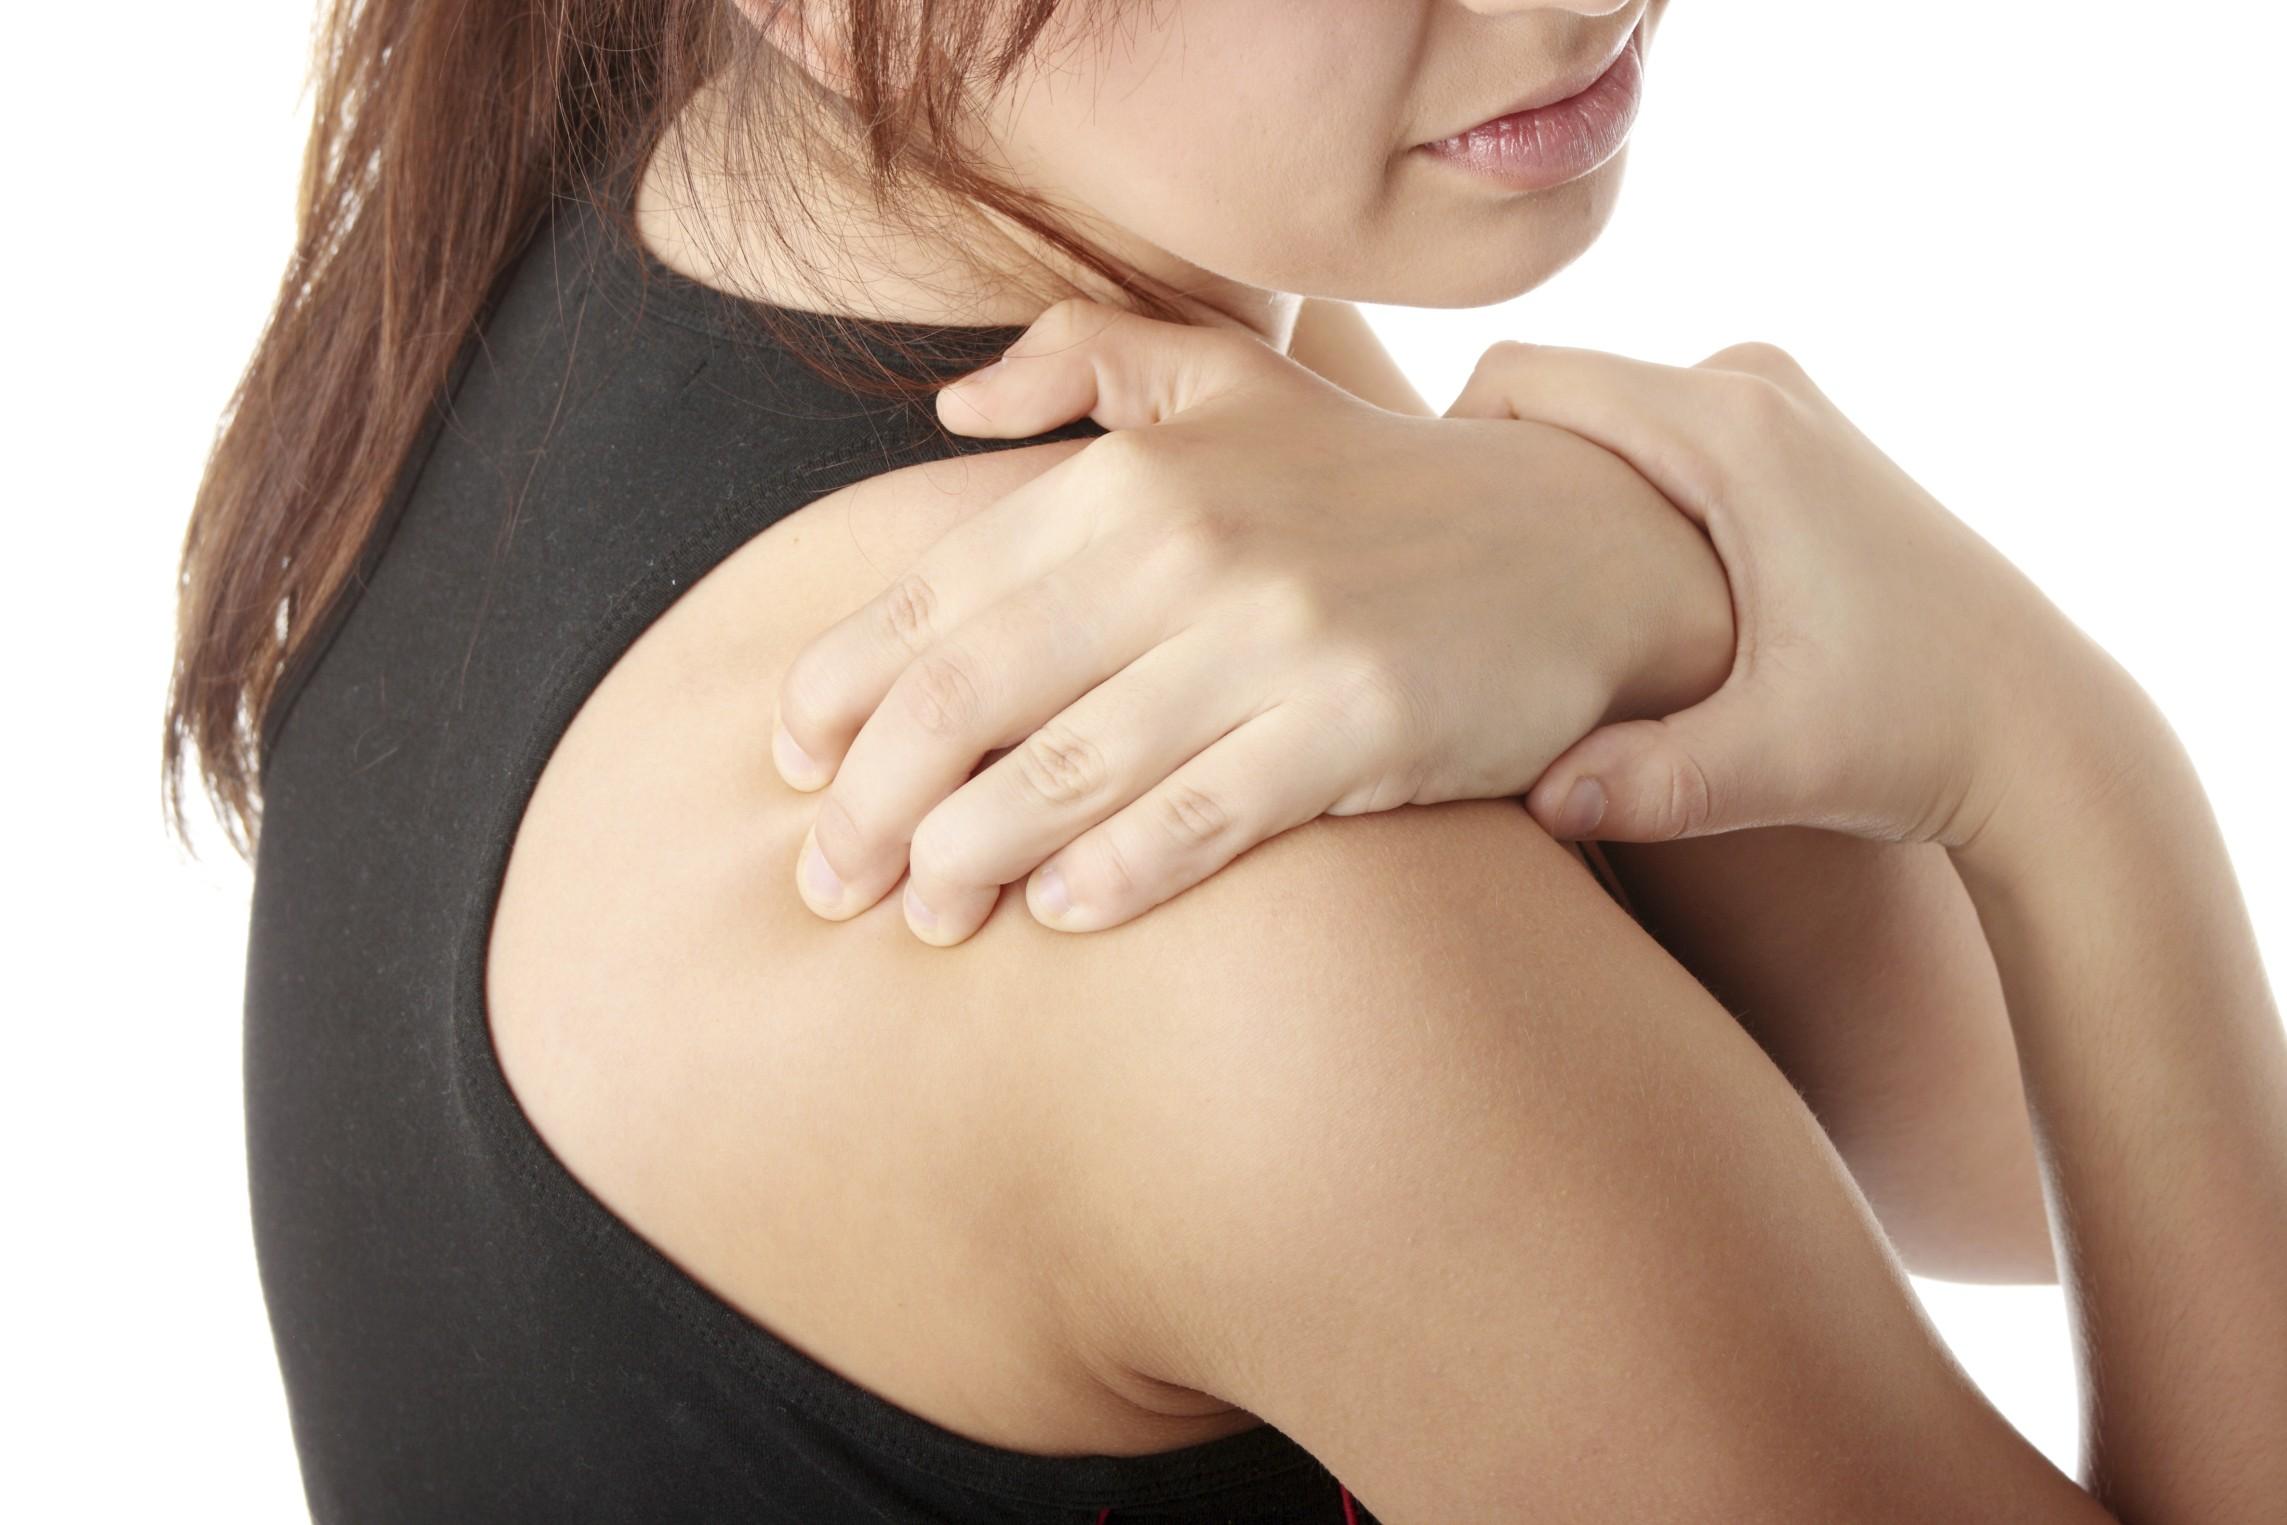 Перелом шейки плеча – это разрушение цельной структуры плечевой кости в ее верхнем отделе, который находится немного ниже плечевого сустава. По частотности довольно распространенная травма.